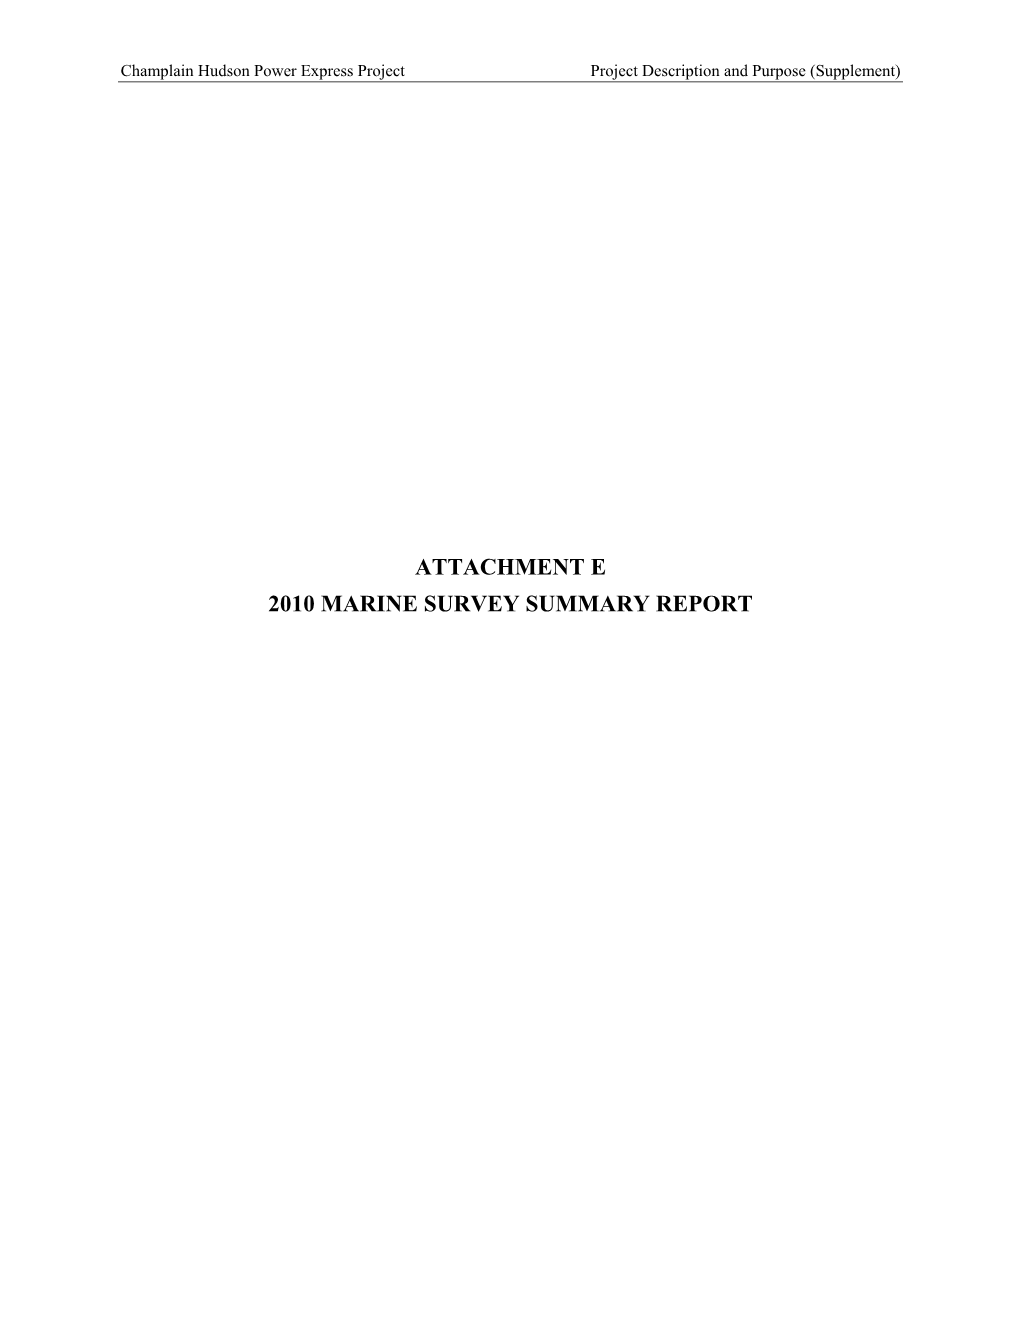 Attachment E – 2010 Marine Survey Summary Report